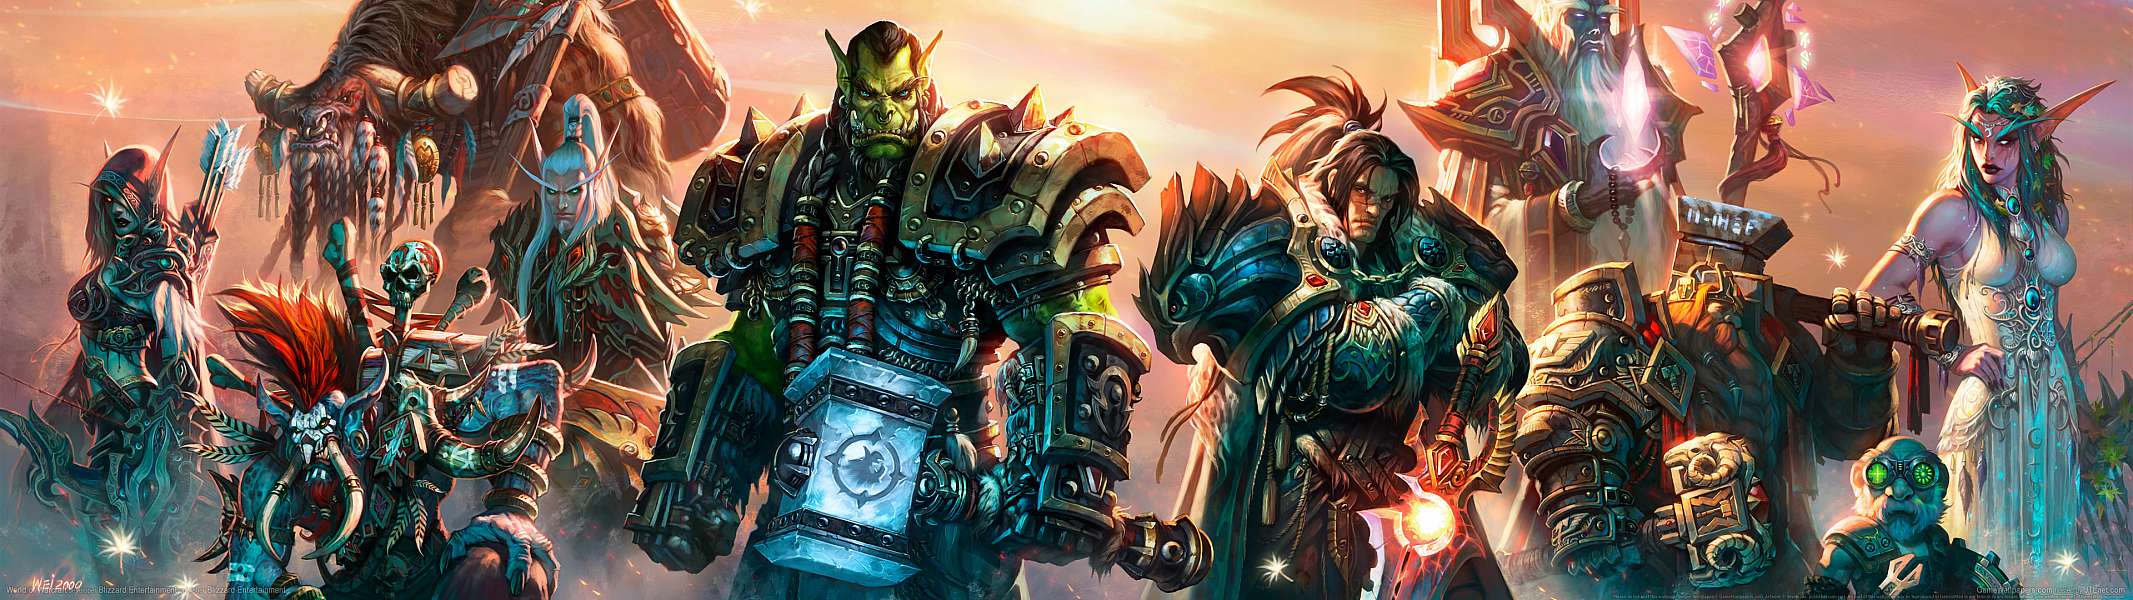 World of Warcraft dual screen fond d'écran